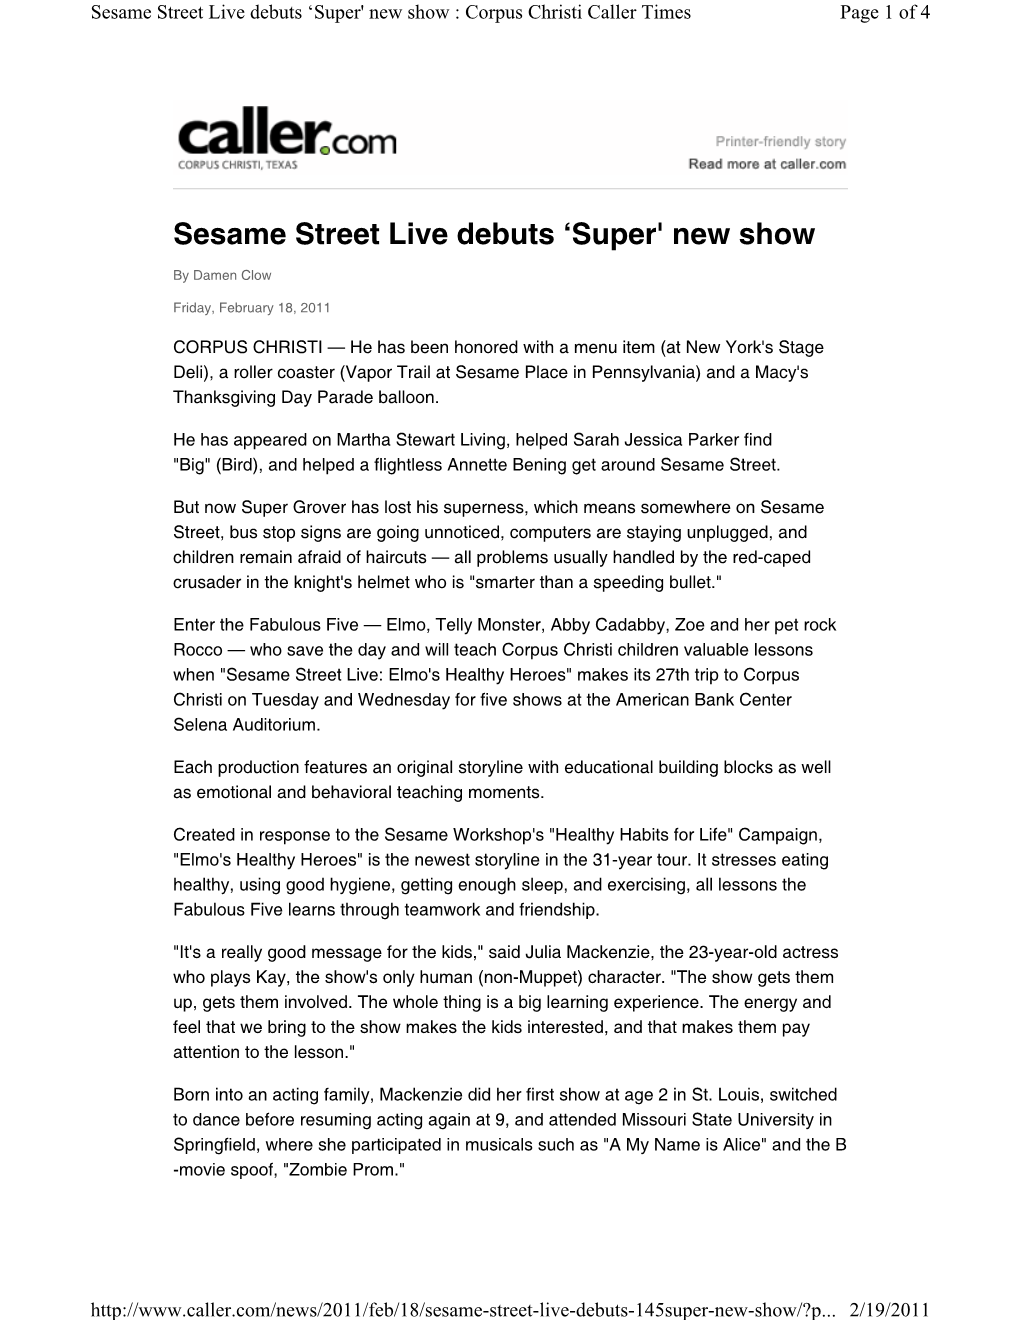 Sesame Street Live Debuts 'Super' New Show